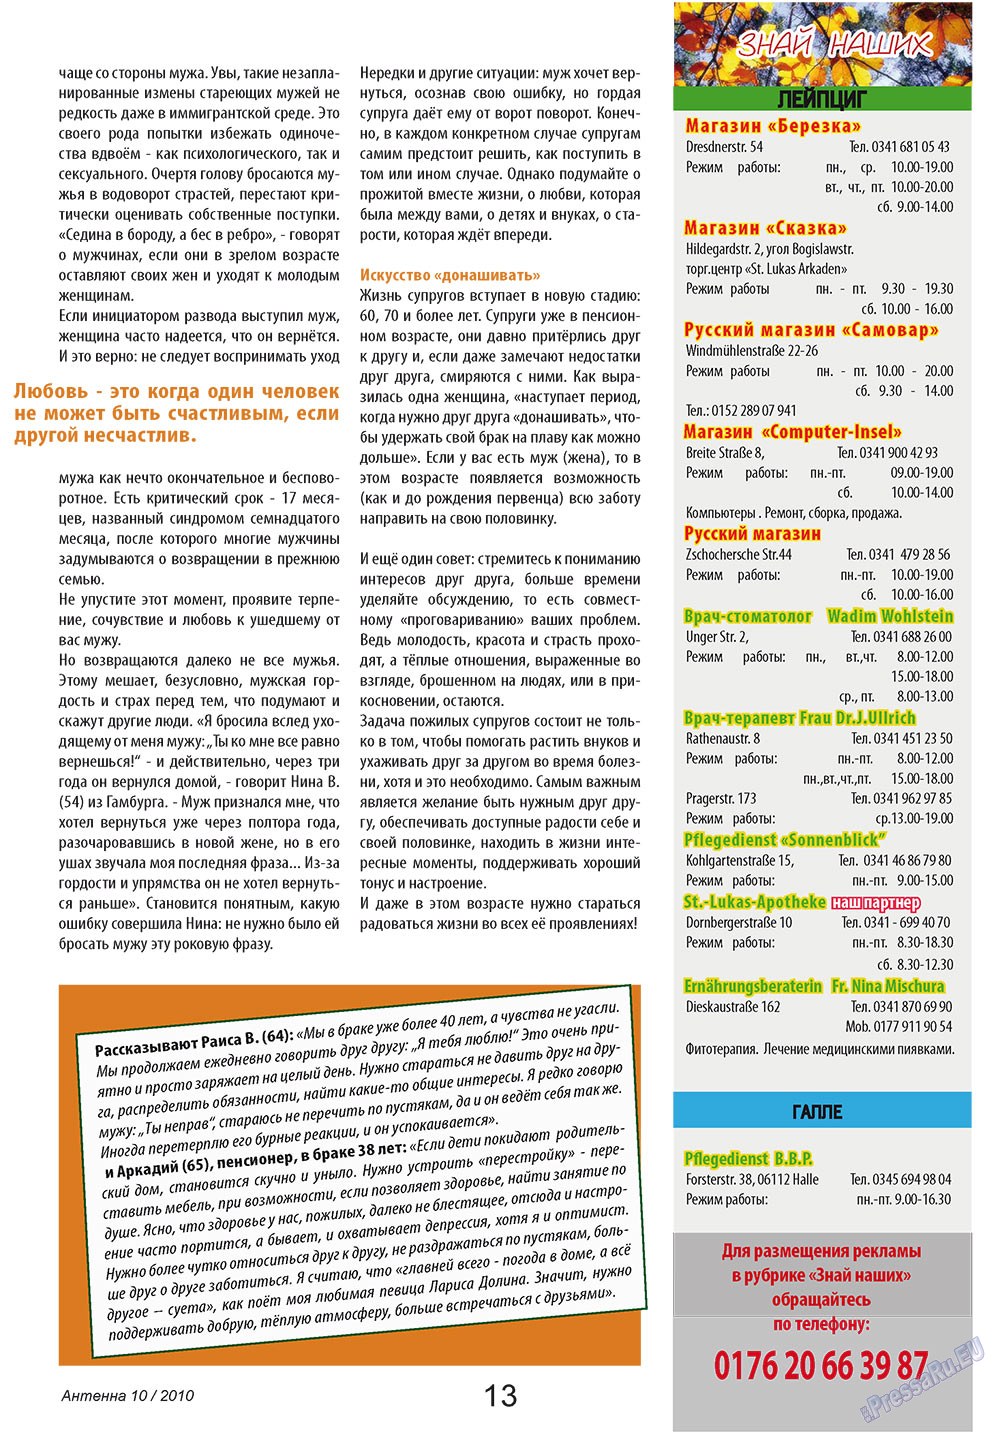 Антенна, журнал. 2010 №10 стр.13